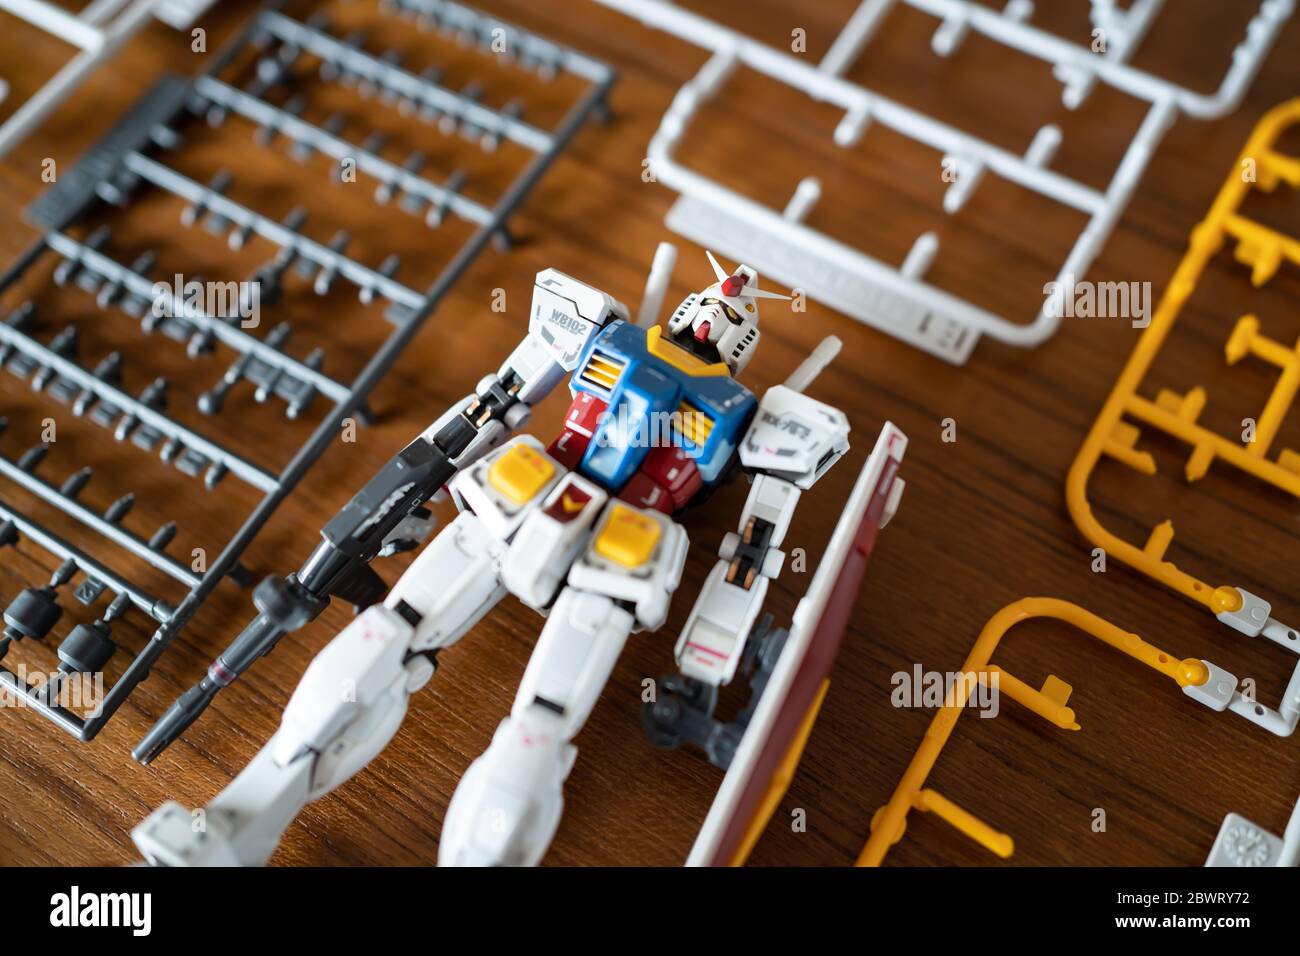 Bangkok, Thailandia - 31 maggio 2020 : Gunpla, il kit di plastica di Gundam, una serie di animazione giapponese, è stato assemblato. Foto Stock